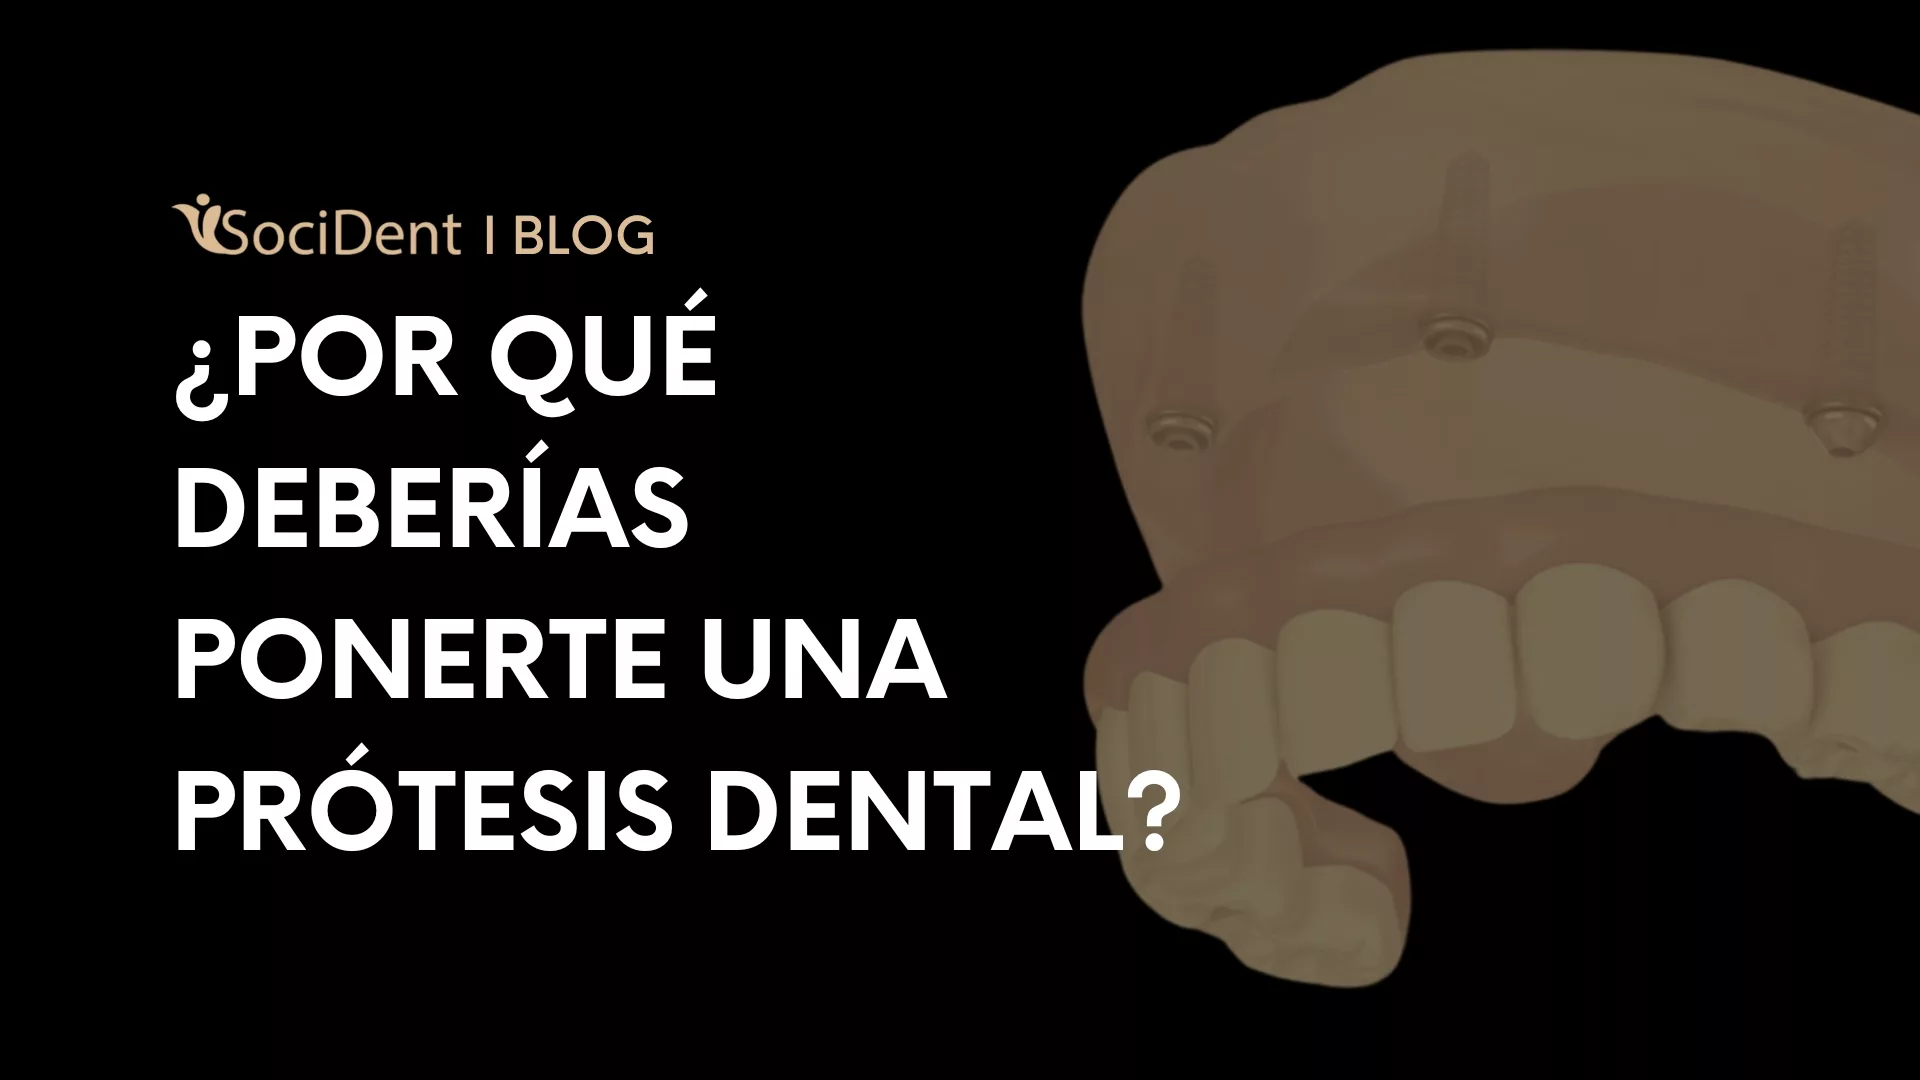 por que ponerse prótesis dental - clínicas dentales Socident en madrid mostoles y navalcarnero